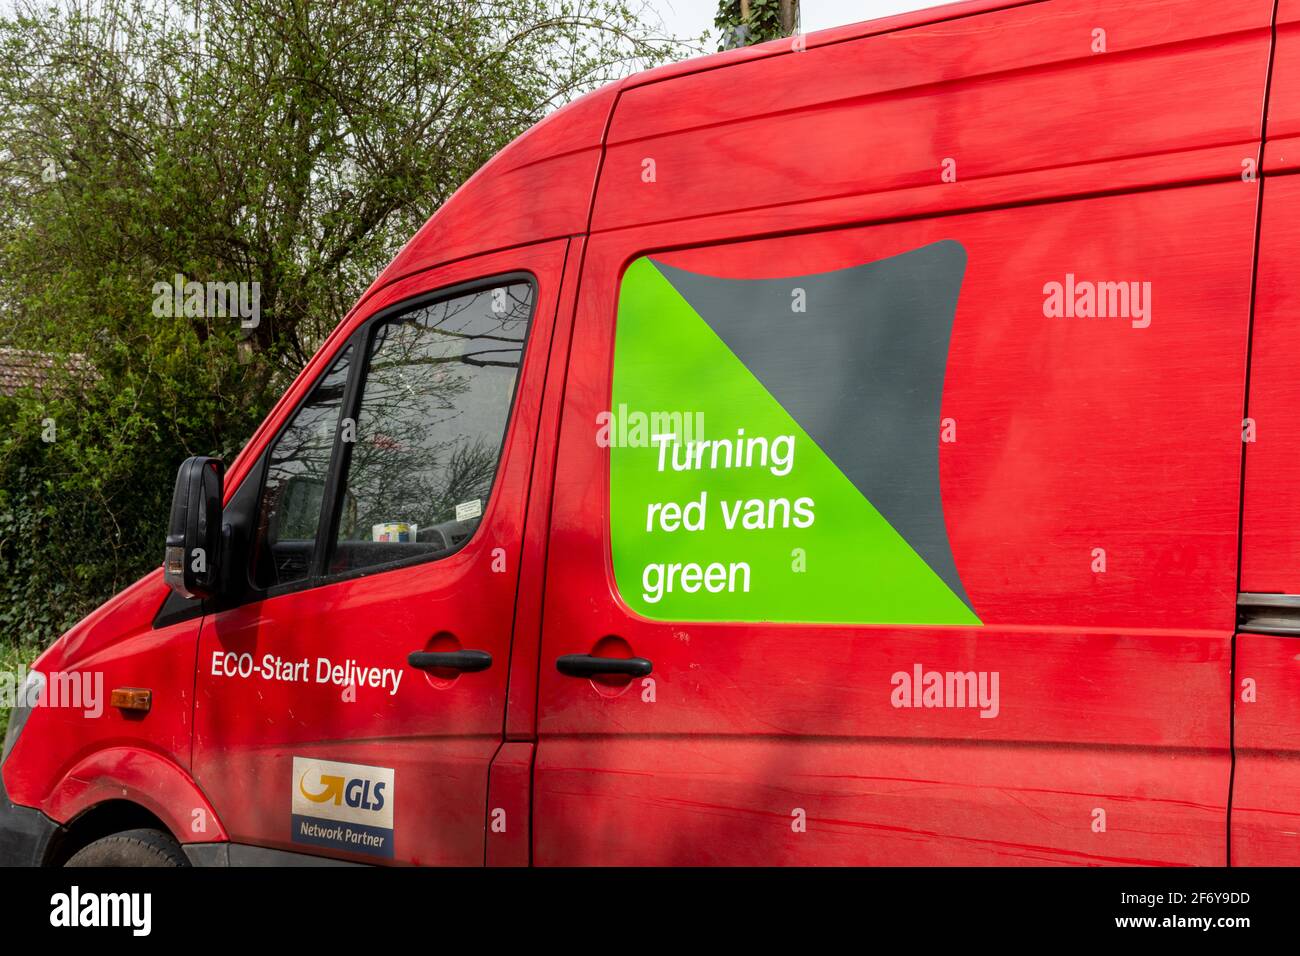 Pulmino rosso Parcelforce in tutto il mondo con uno slogan ecologico Turning Red Vans Green sul lato, Regno Unito Foto Stock